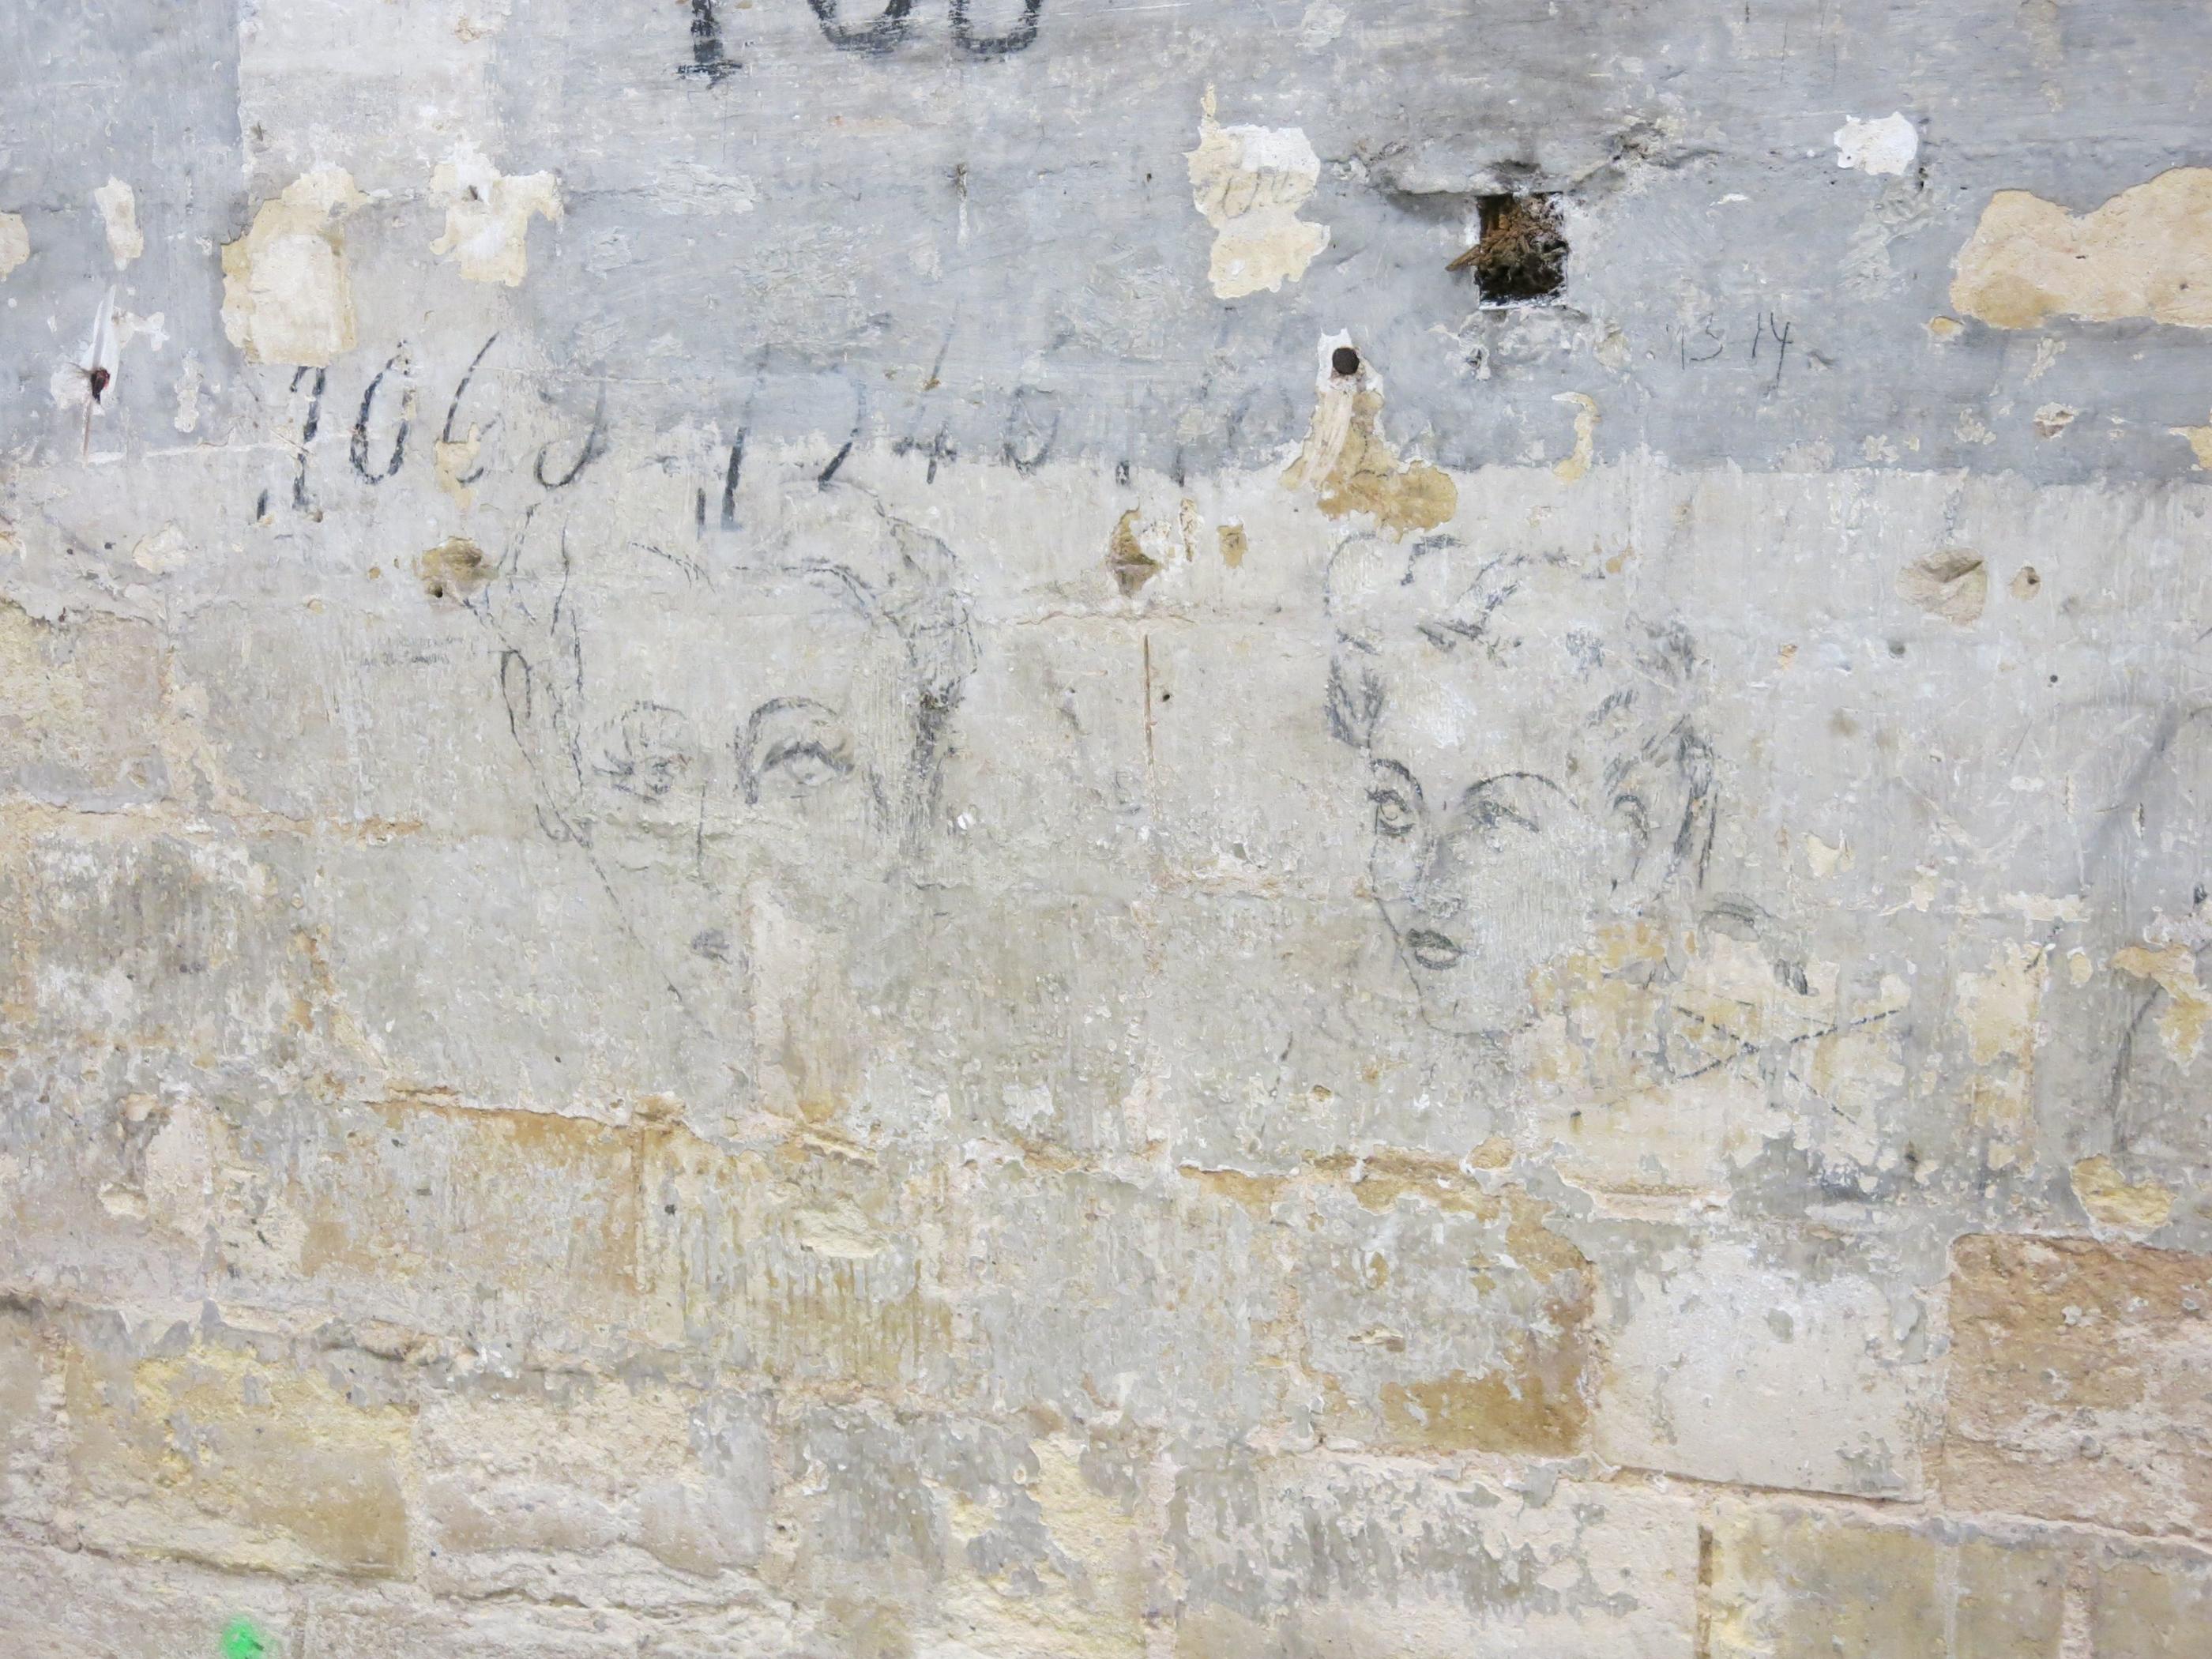 Jusqu’à 7 000 femmes ont été détenues au fort de Romainville, situé aux Lilas (Seine-Saint-Denis), durant la Seconde Guerre mondiale. De leur passage subsiste des témoignages manuscrits sur les murs. LP/Elsa Marnette